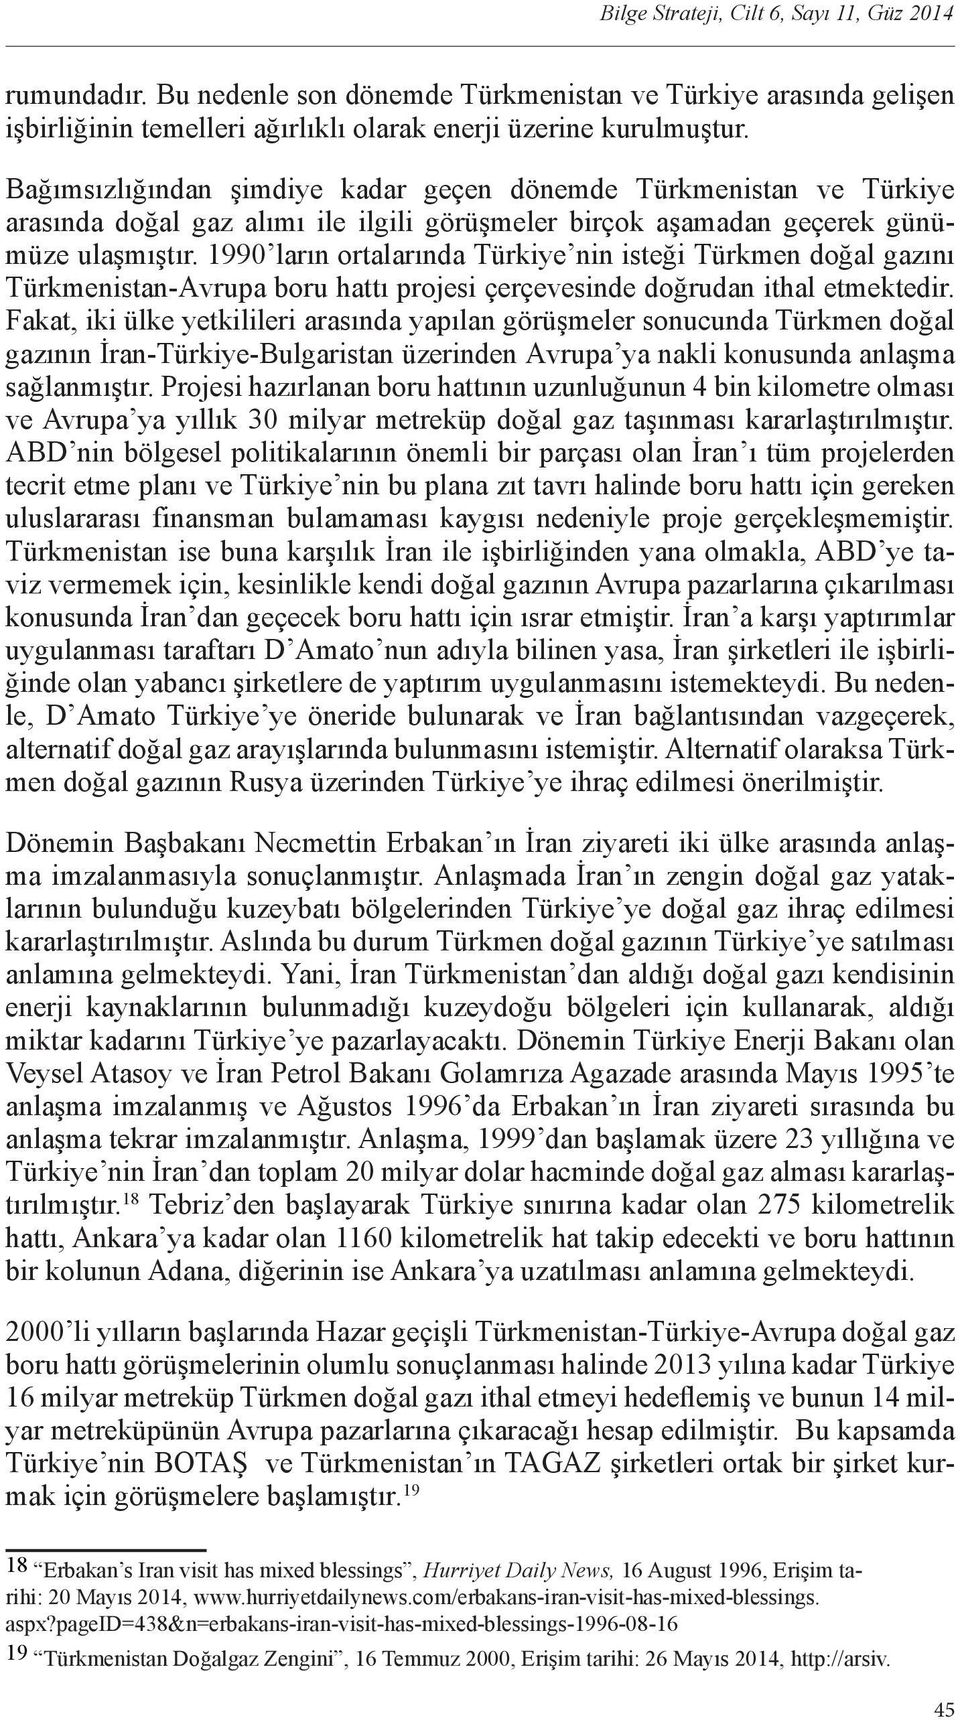 1990 ların ortalarında Türkiye nin isteği Türkmen doğal gazını Türkmenistan-Avrupa boru hattı projesi çerçevesinde doğrudan ithal etmektedir.